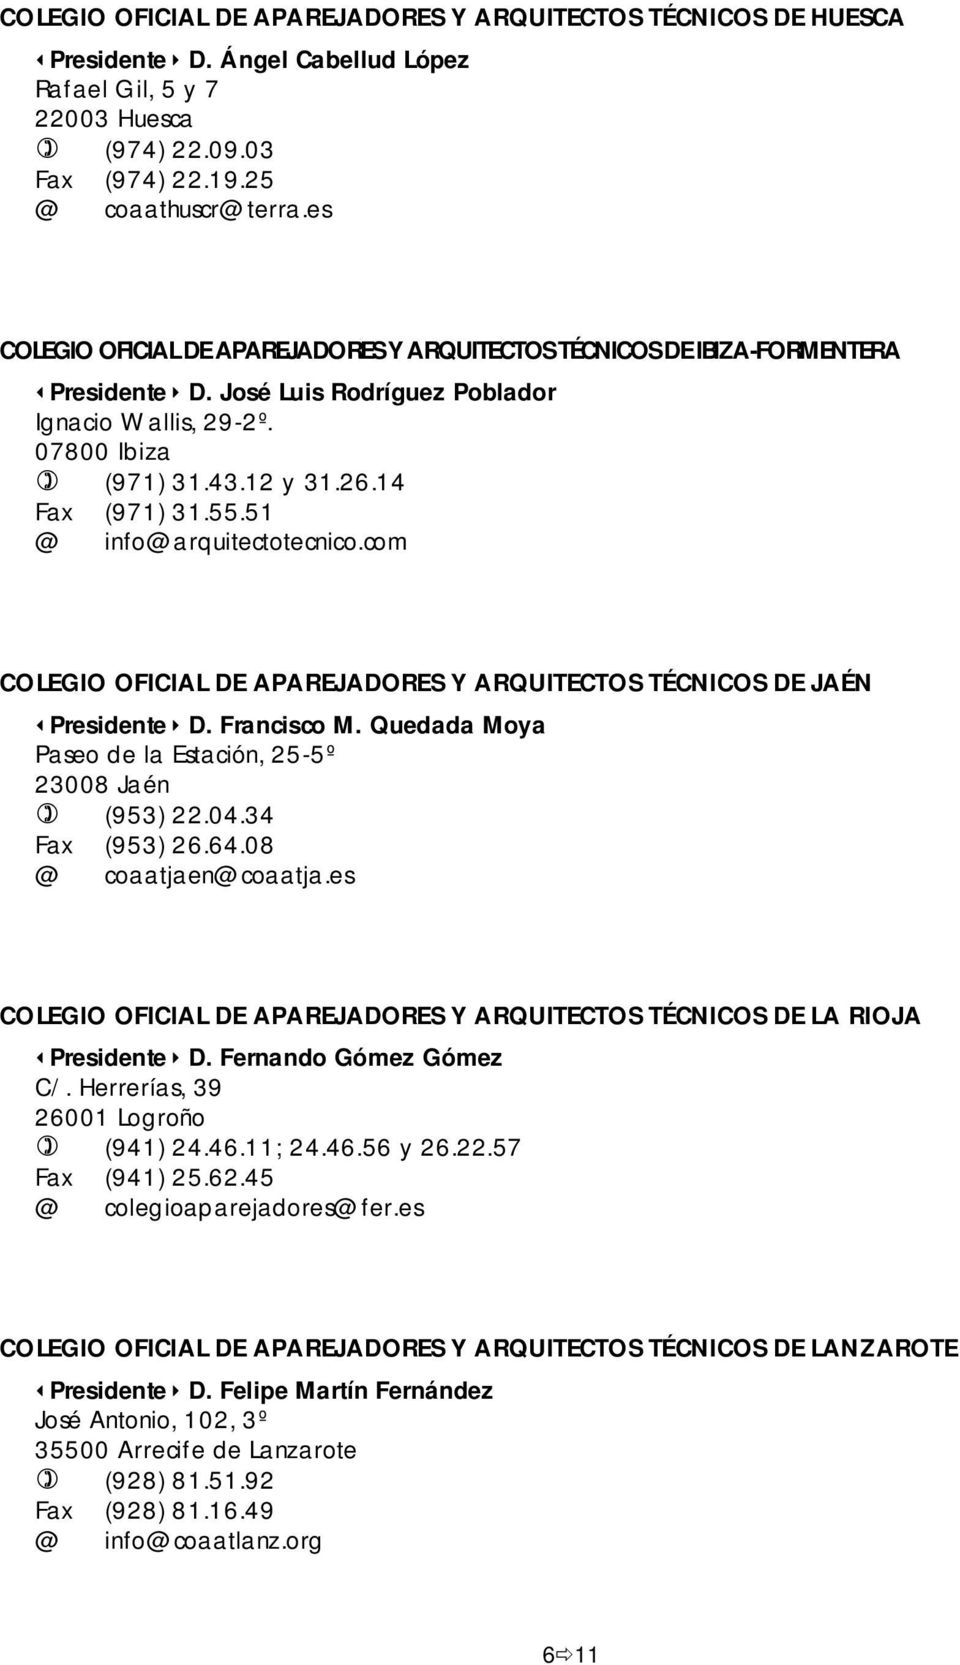 51 @ info@arquitectotecnico.com COLEGIO OFICIAL DE APAREJADORES Y ARQUITECTOS TÉCNICOS DE JAÉN Presidente D. Francisco M. Quedada Moya Paseo de la Estación, 25-5º 23008 Jaén (953) 22.04.